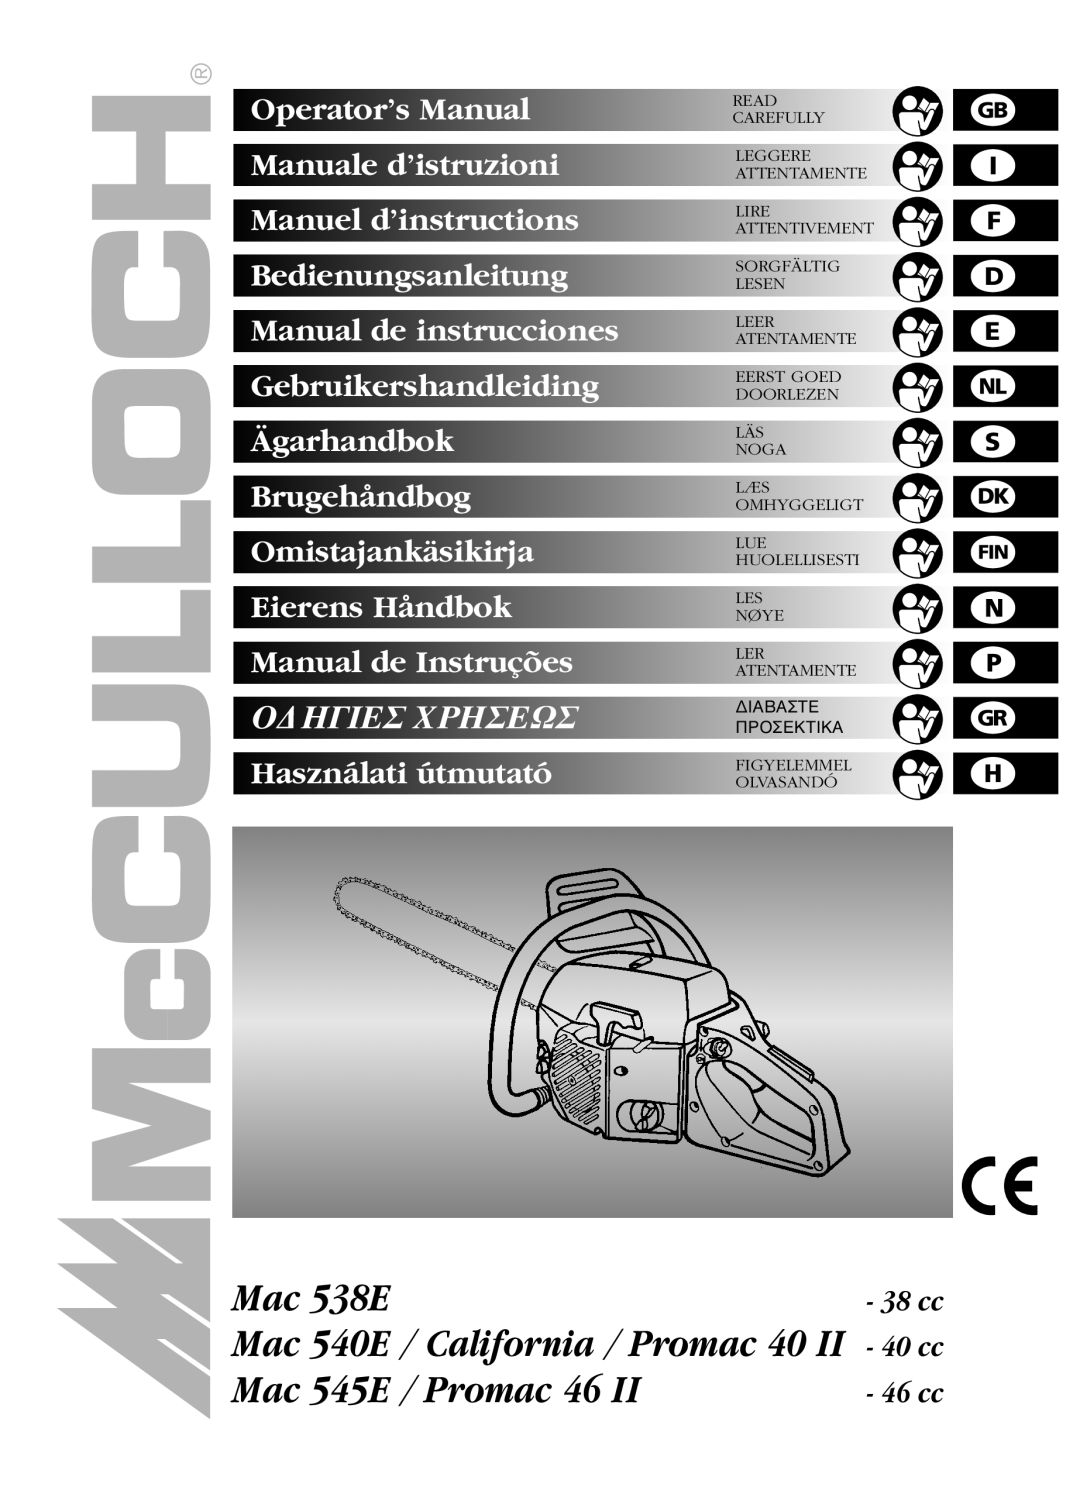 McCulloch MAC 538E manual Mac 538E Mac 540E / California / Promac 40 II Mac 545E / Promac 46, O∆Hγieσ Xphσeωσ, g i f 